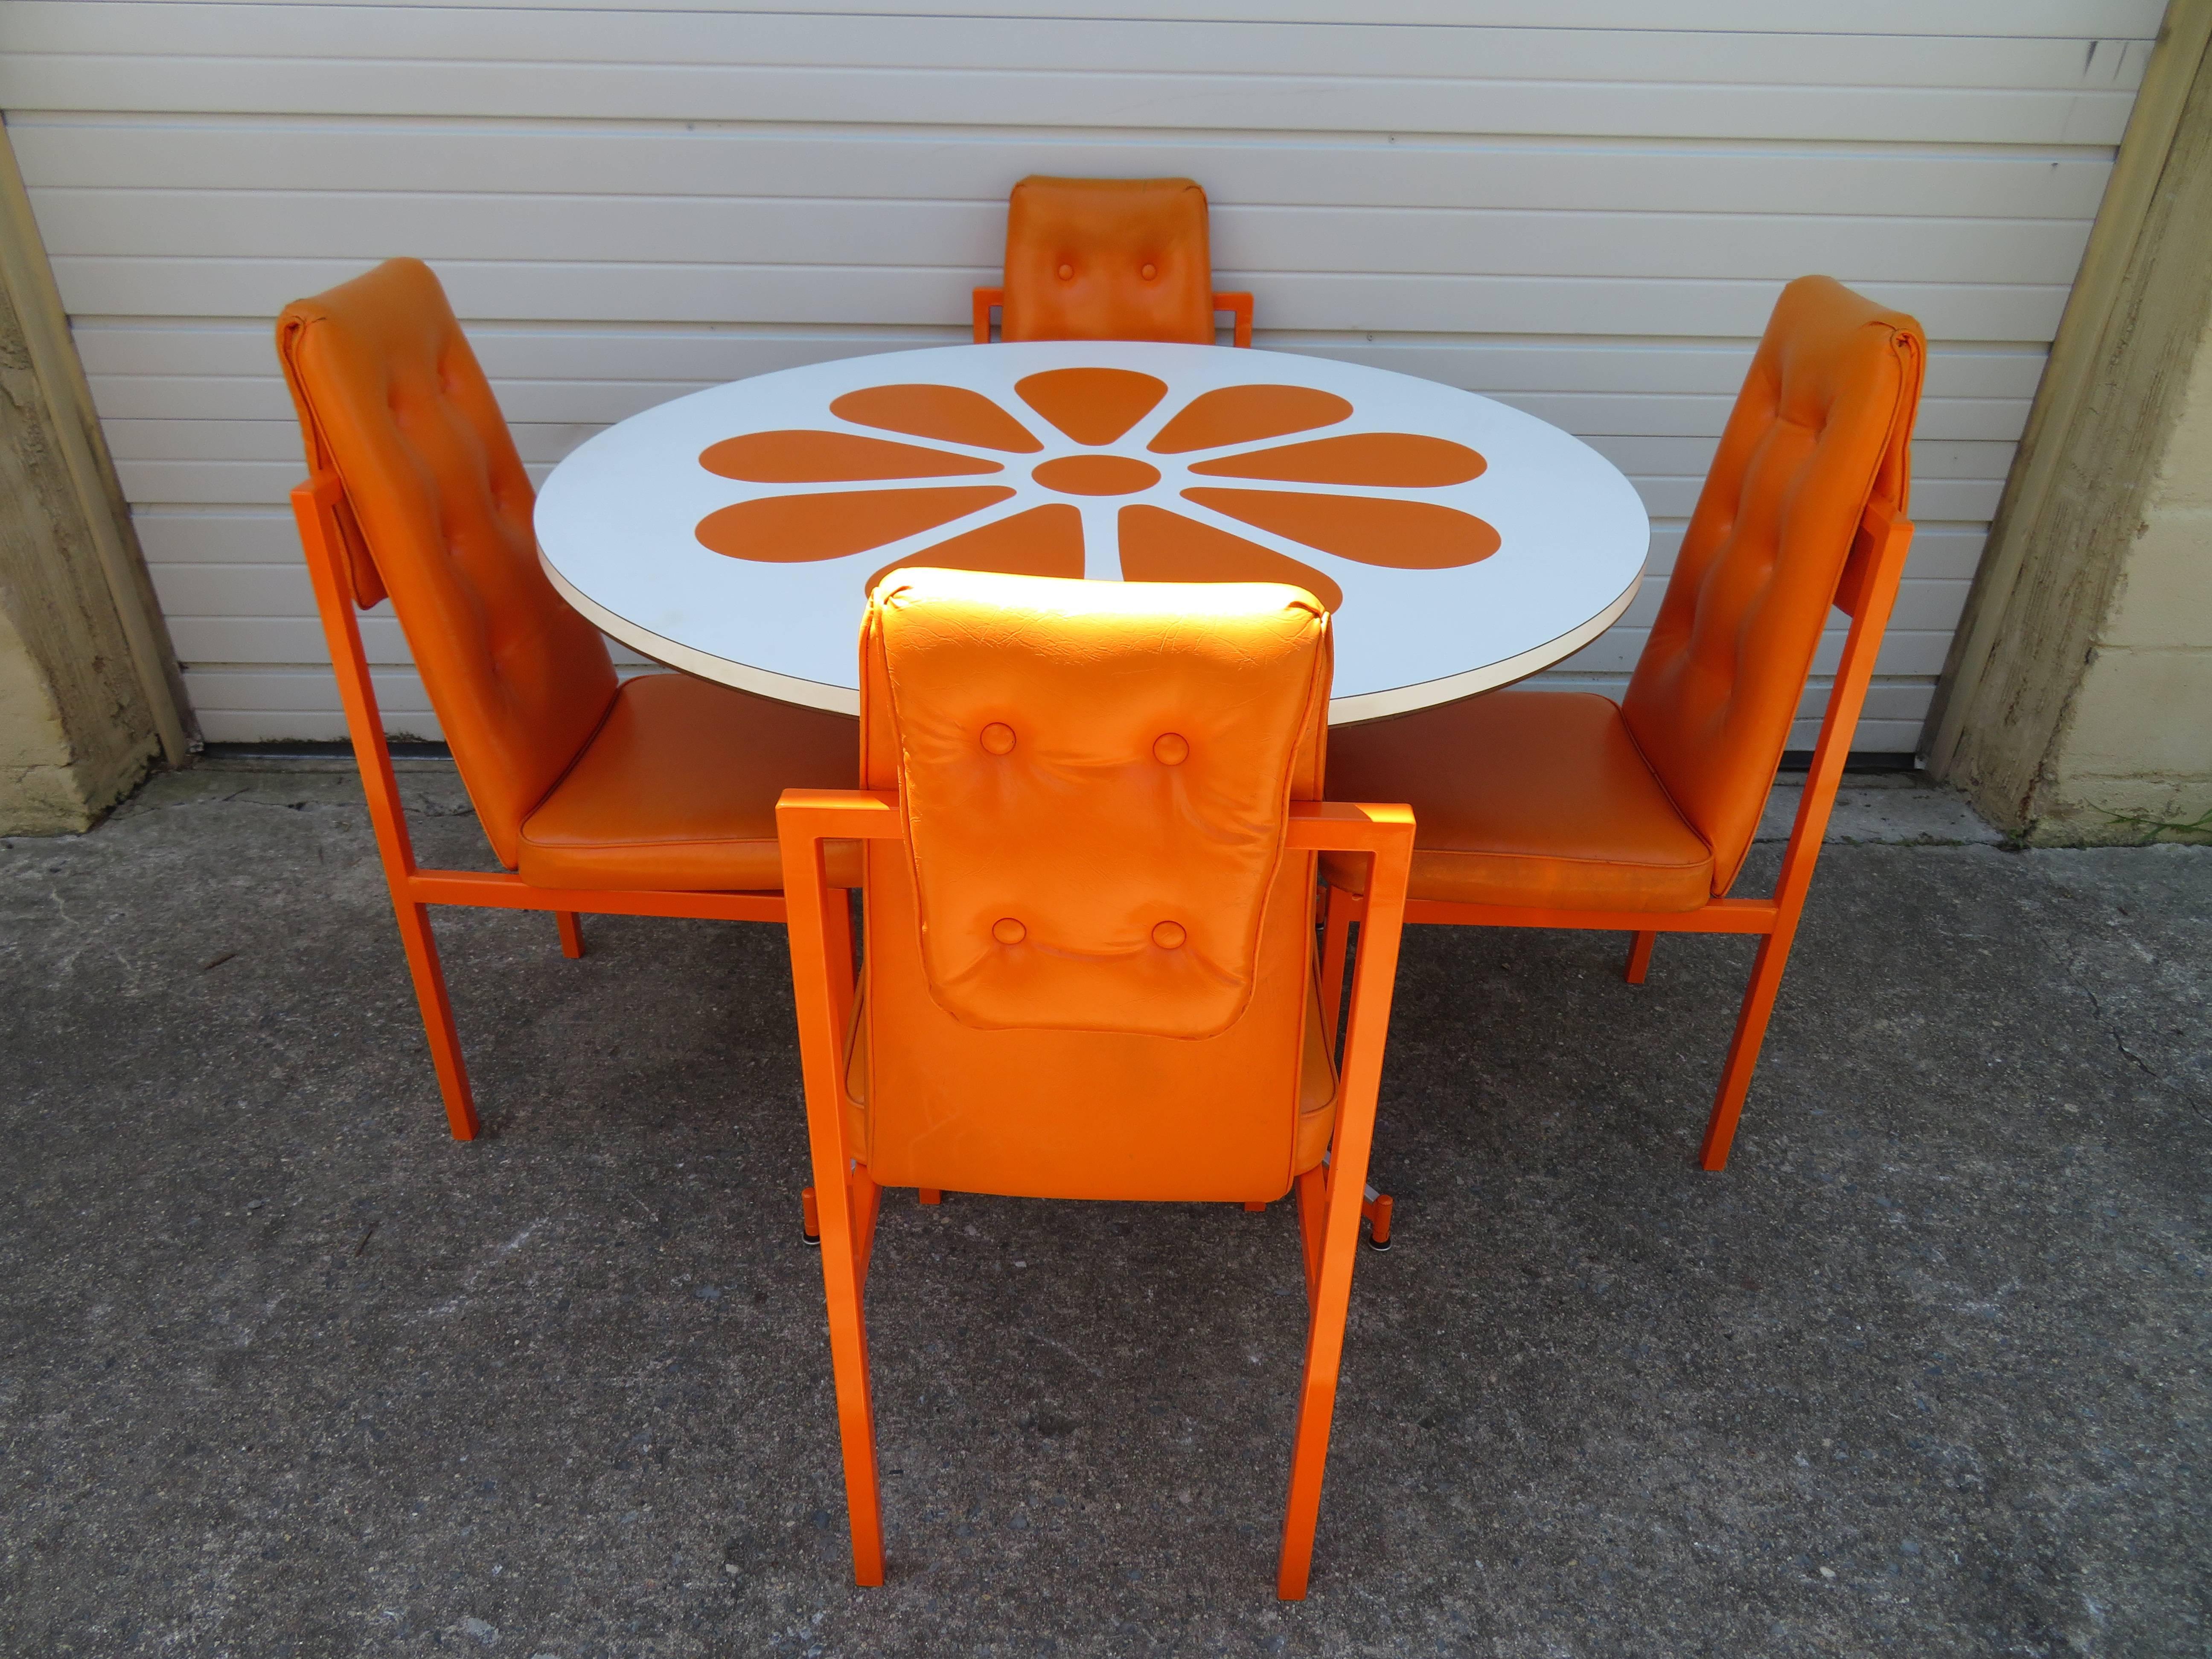 Magnifique ensemble de quatre chaises de salle à manger amusantes avec une table de salle à manger orange à fleurs en tranches assortie. Tous les cadres métalliques ont été fraîchement recouverts d'une peinture en poudre de la même couleur qu'à